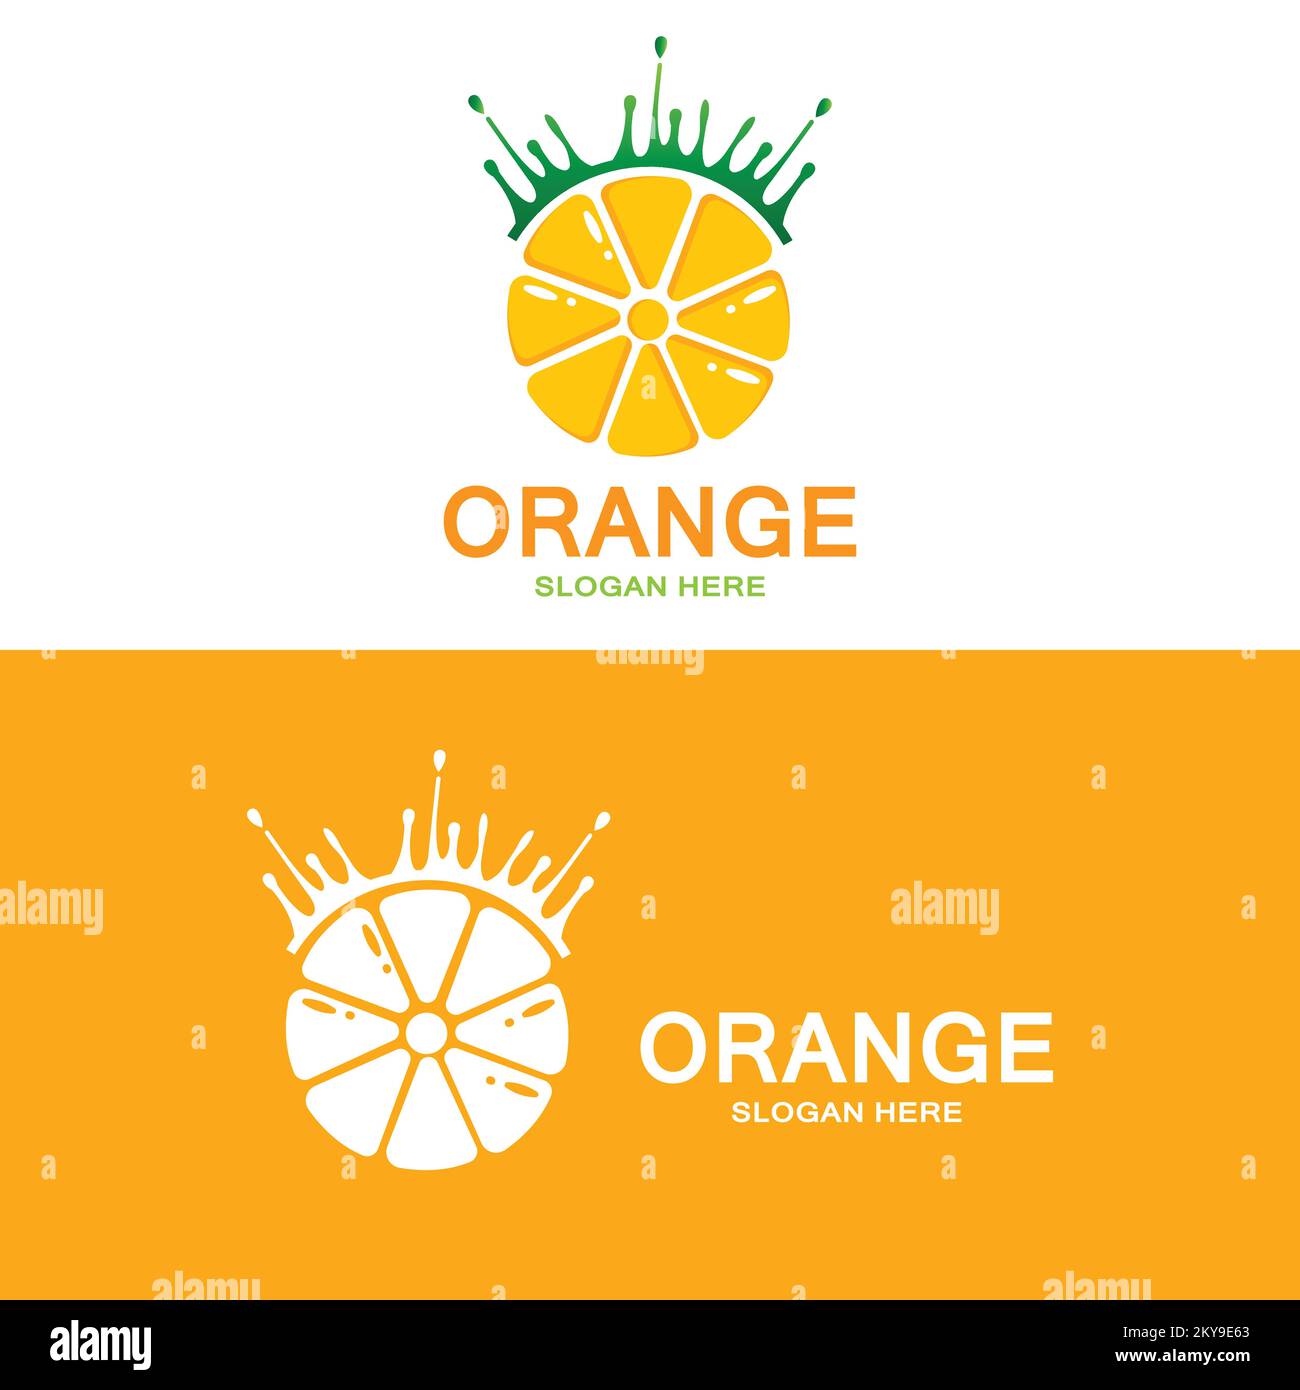 Logo orange, vecteur de fruits frais, design adapté à la boutique de fruits, modèle de bannière, icône de fruits orange Illustration de Vecteur